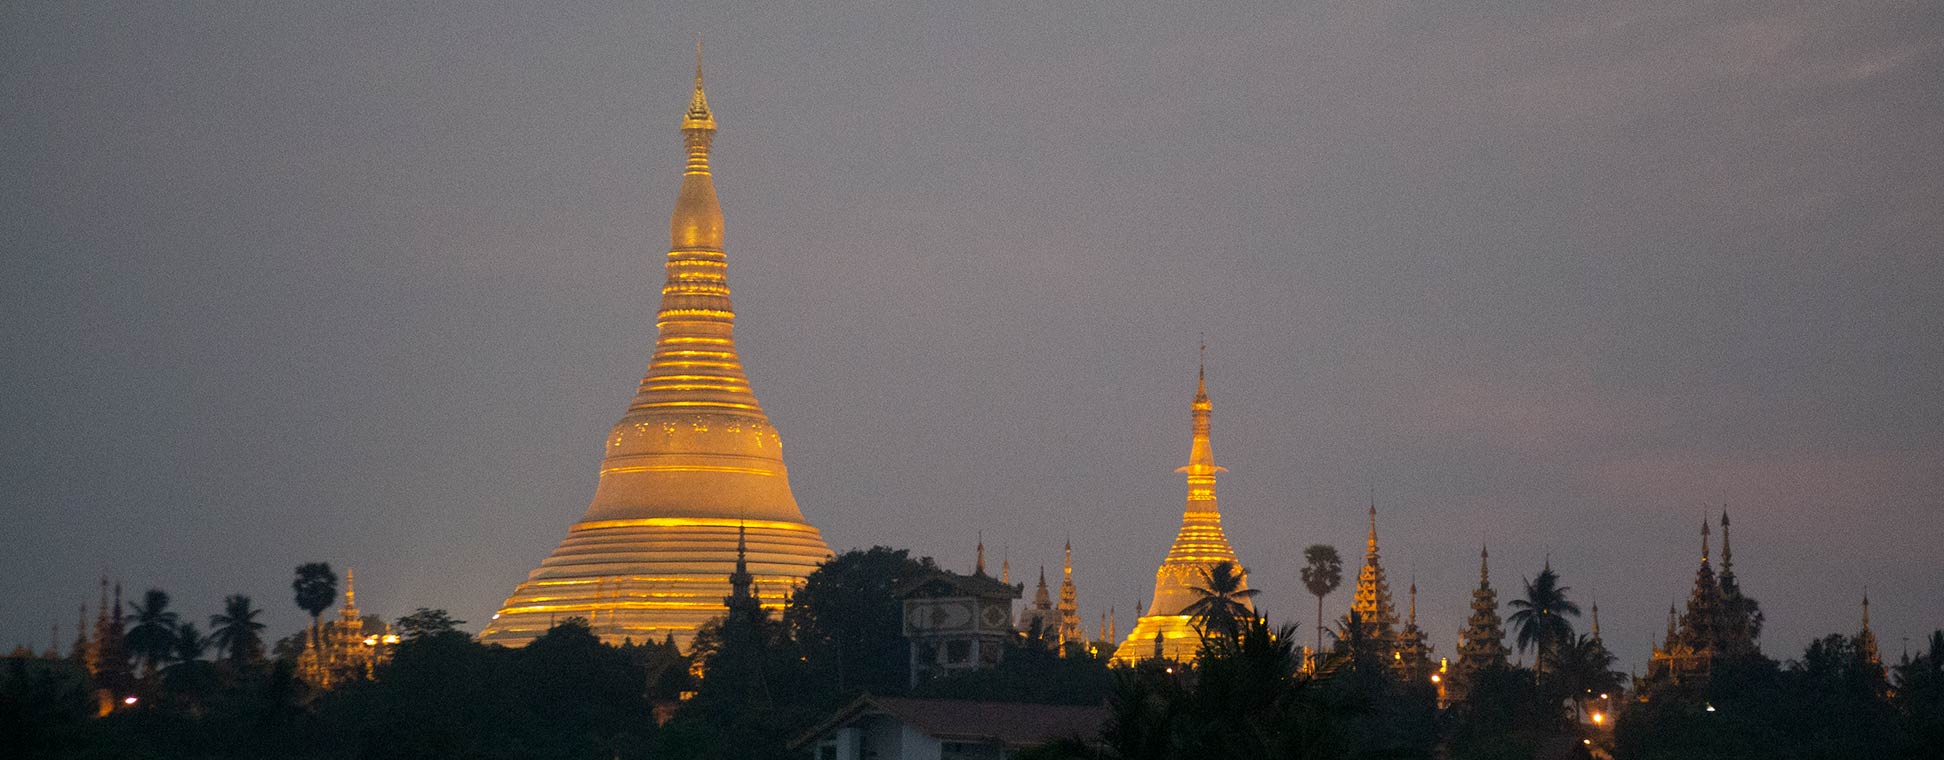 Shwedagon Pagoda after sunset, Yangon, Myanmar